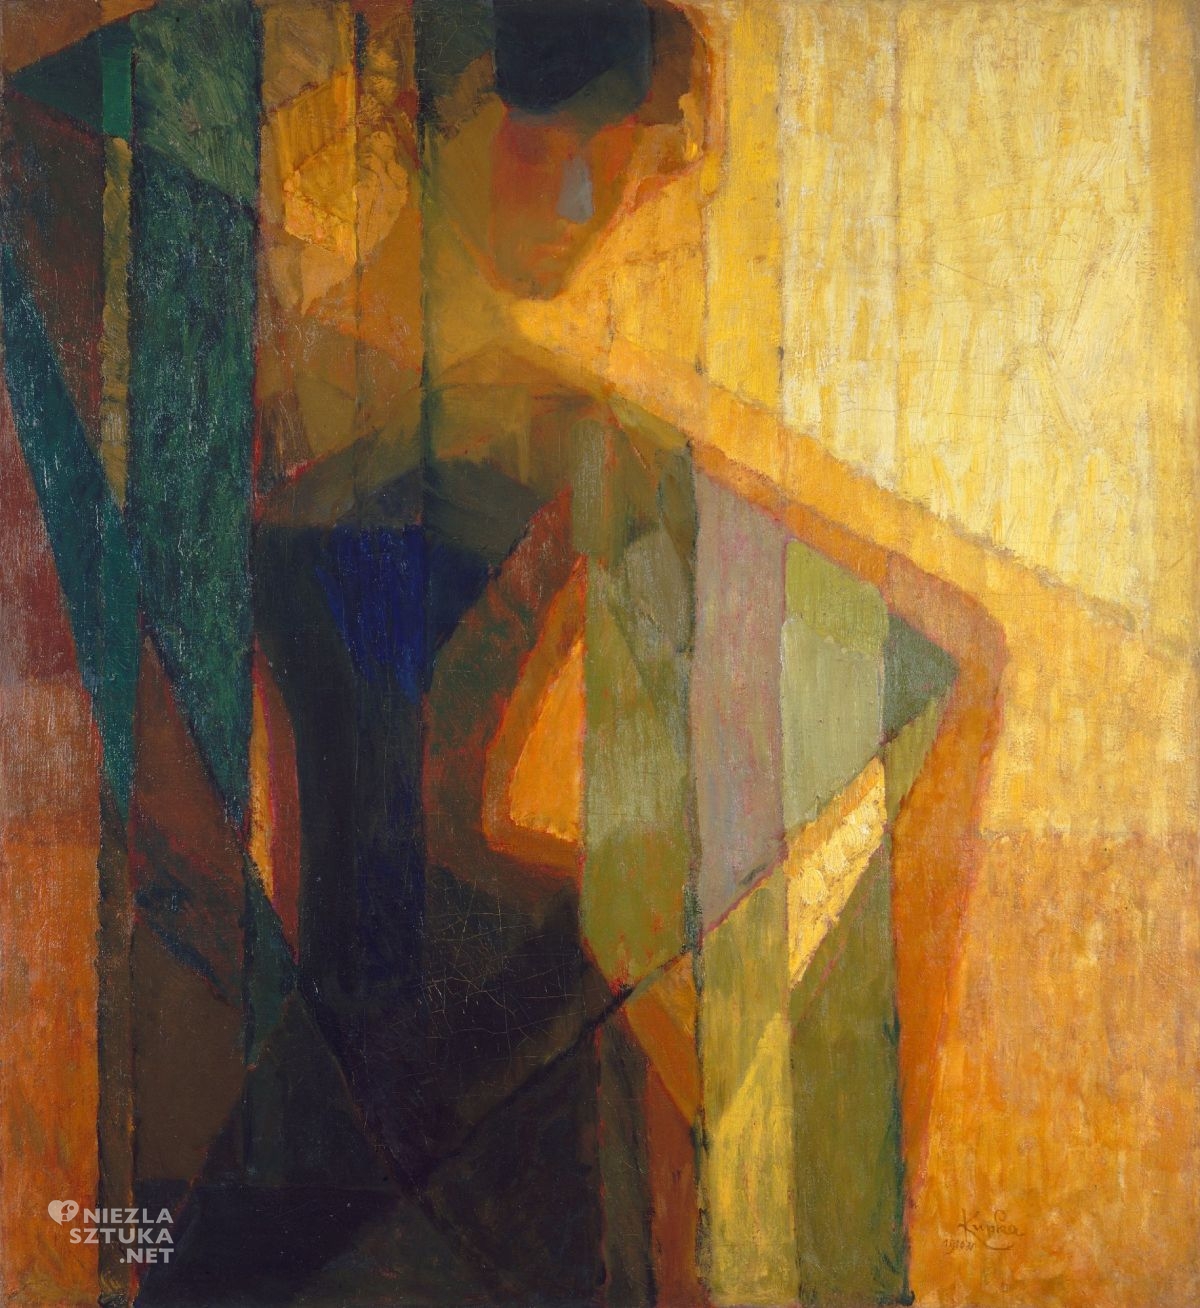 František Kupka, Plany według kolorów (kobieta w trójkątach), malarz czeski, sztuka czeska, Niezła Sztuka